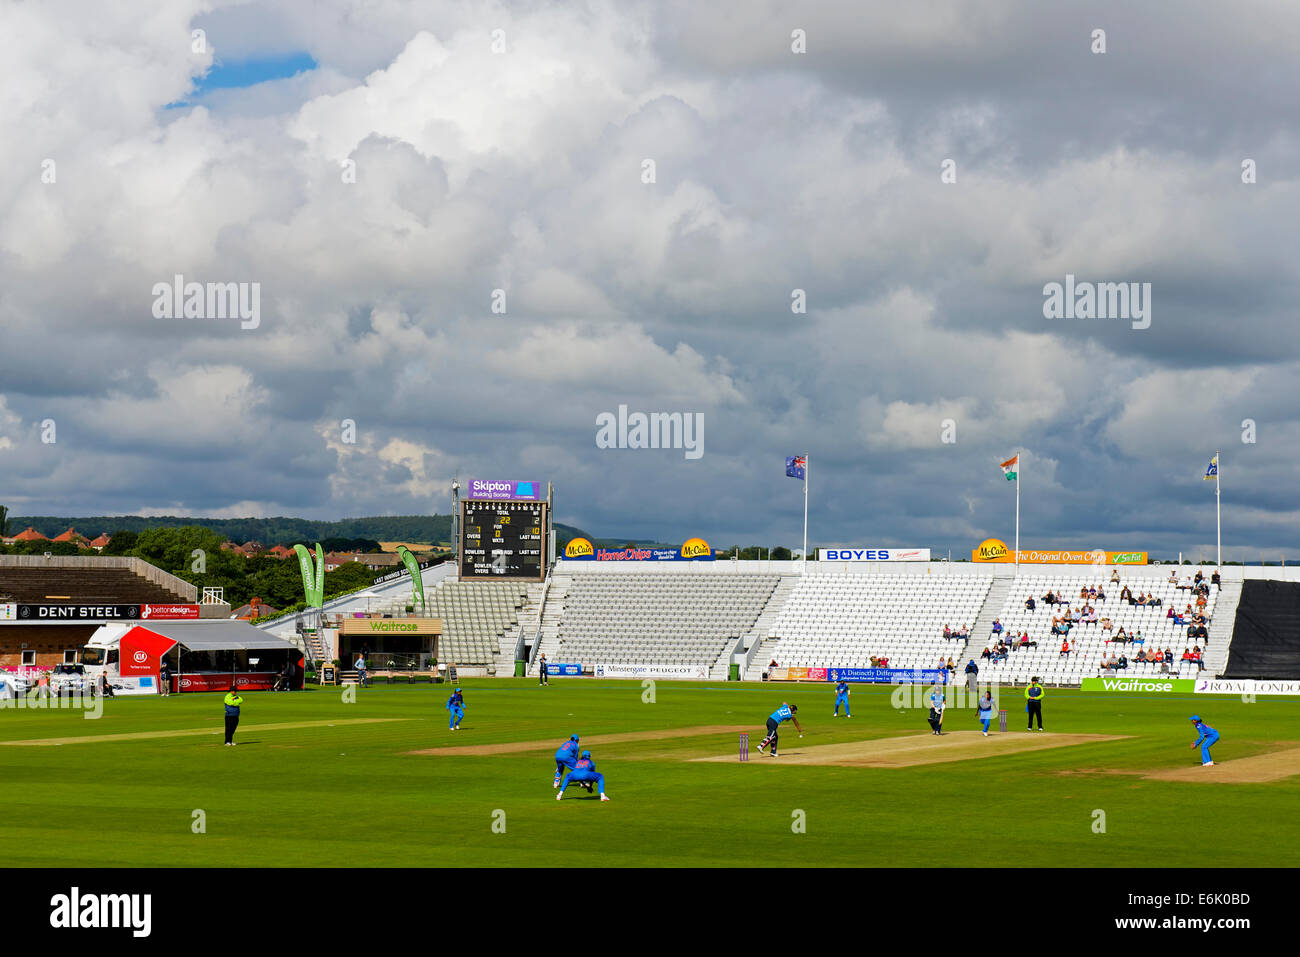 Women's international match de cricket d'un jour entre l'Angleterre et l'Inde, Scarborough, North Yorkshire, Angleterre, Royaume-Uni, 23 août 2014 Banque D'Images